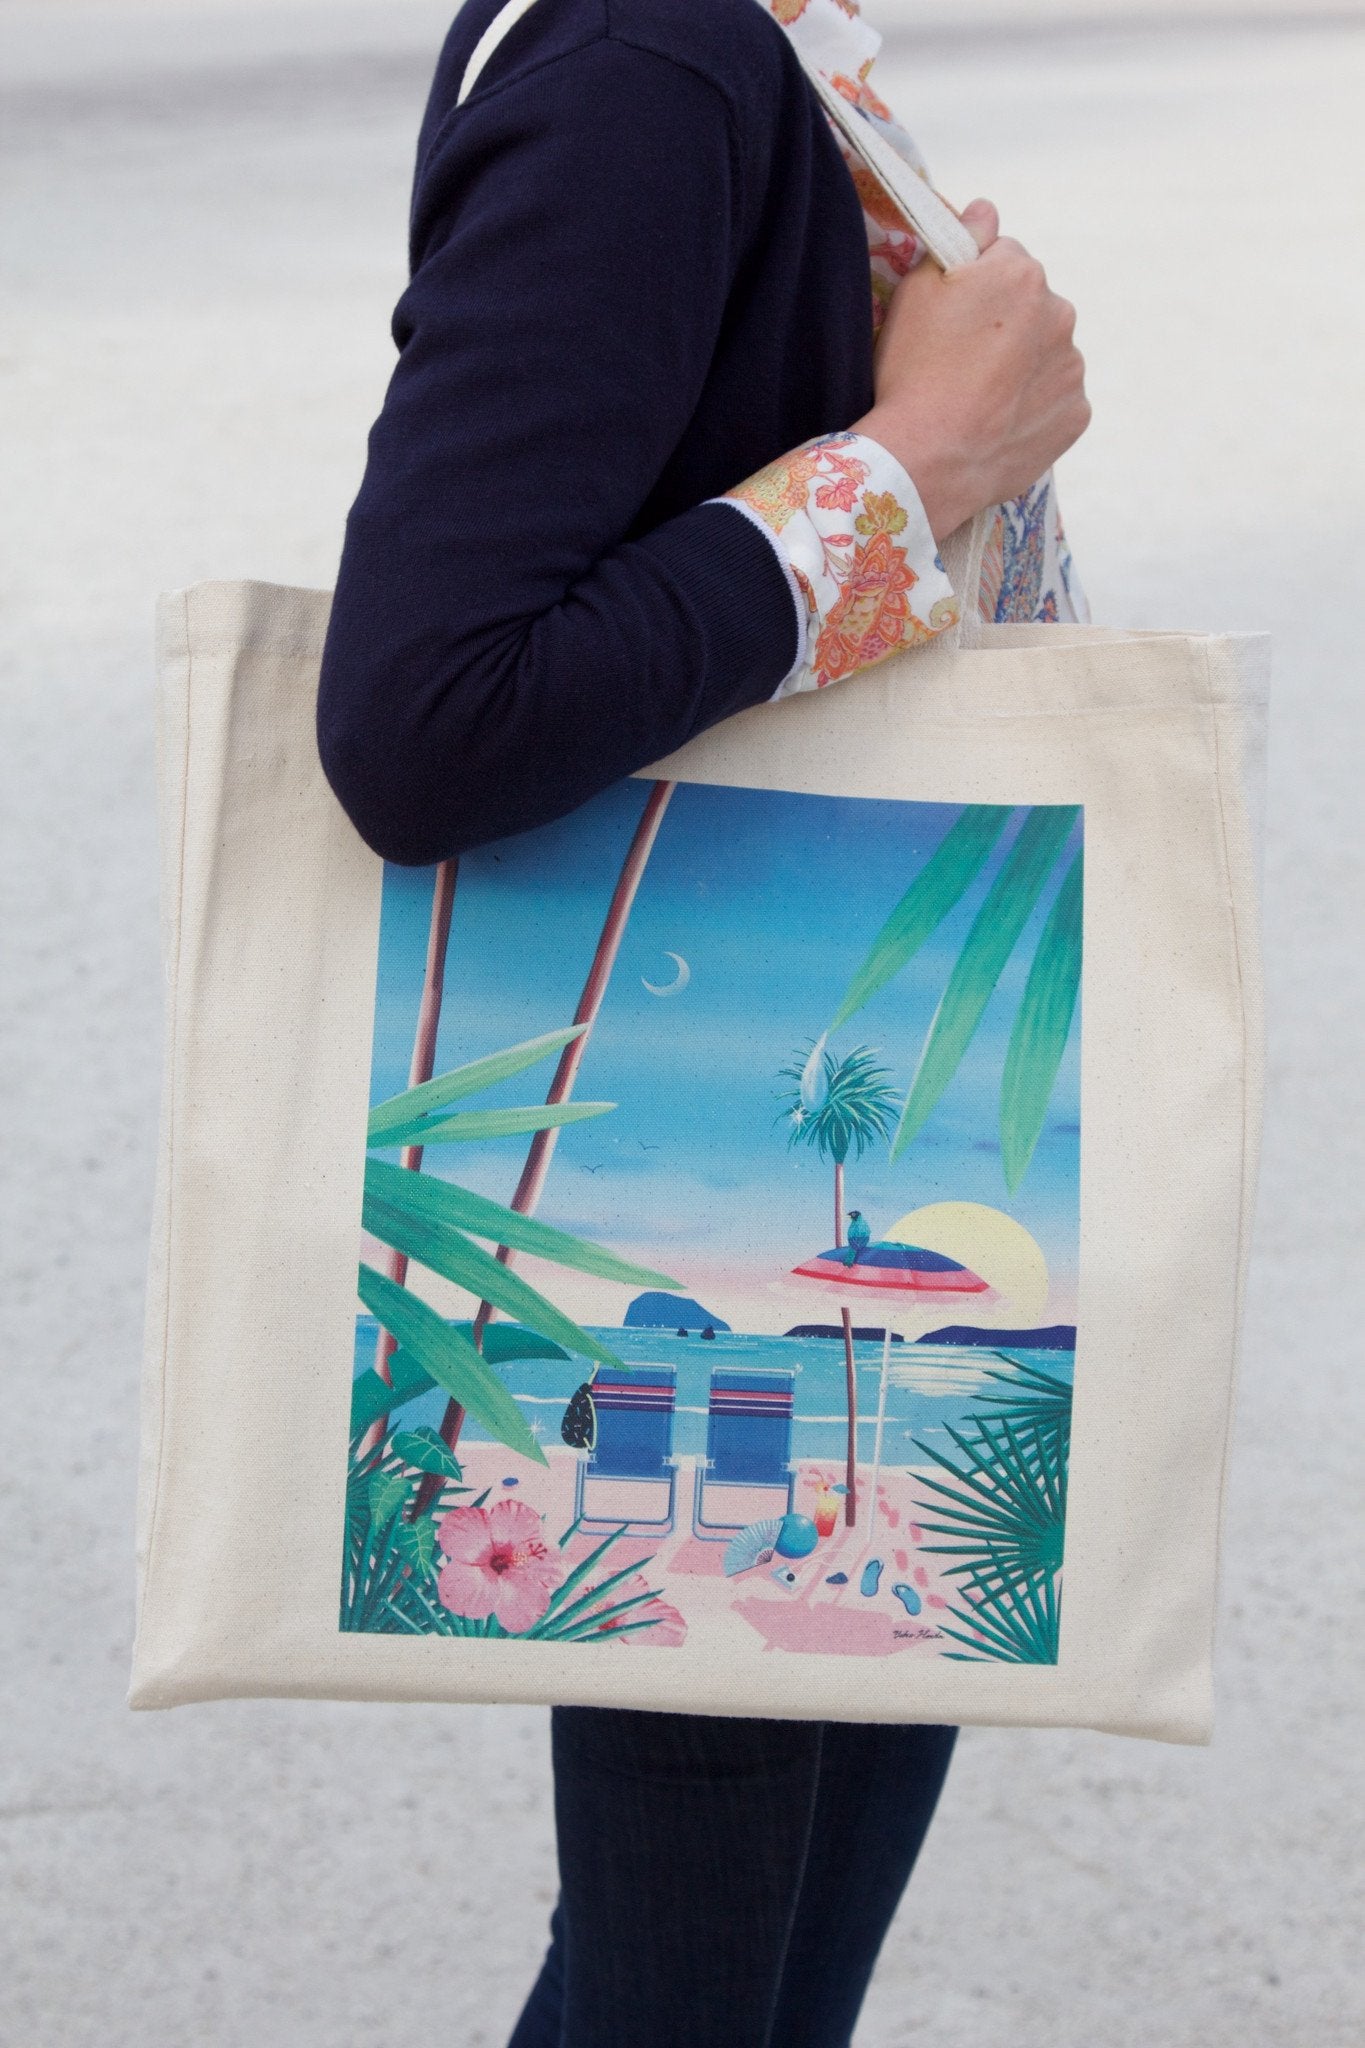 California Dreaming Tote Bag, Yoko Honda – CultureLabel